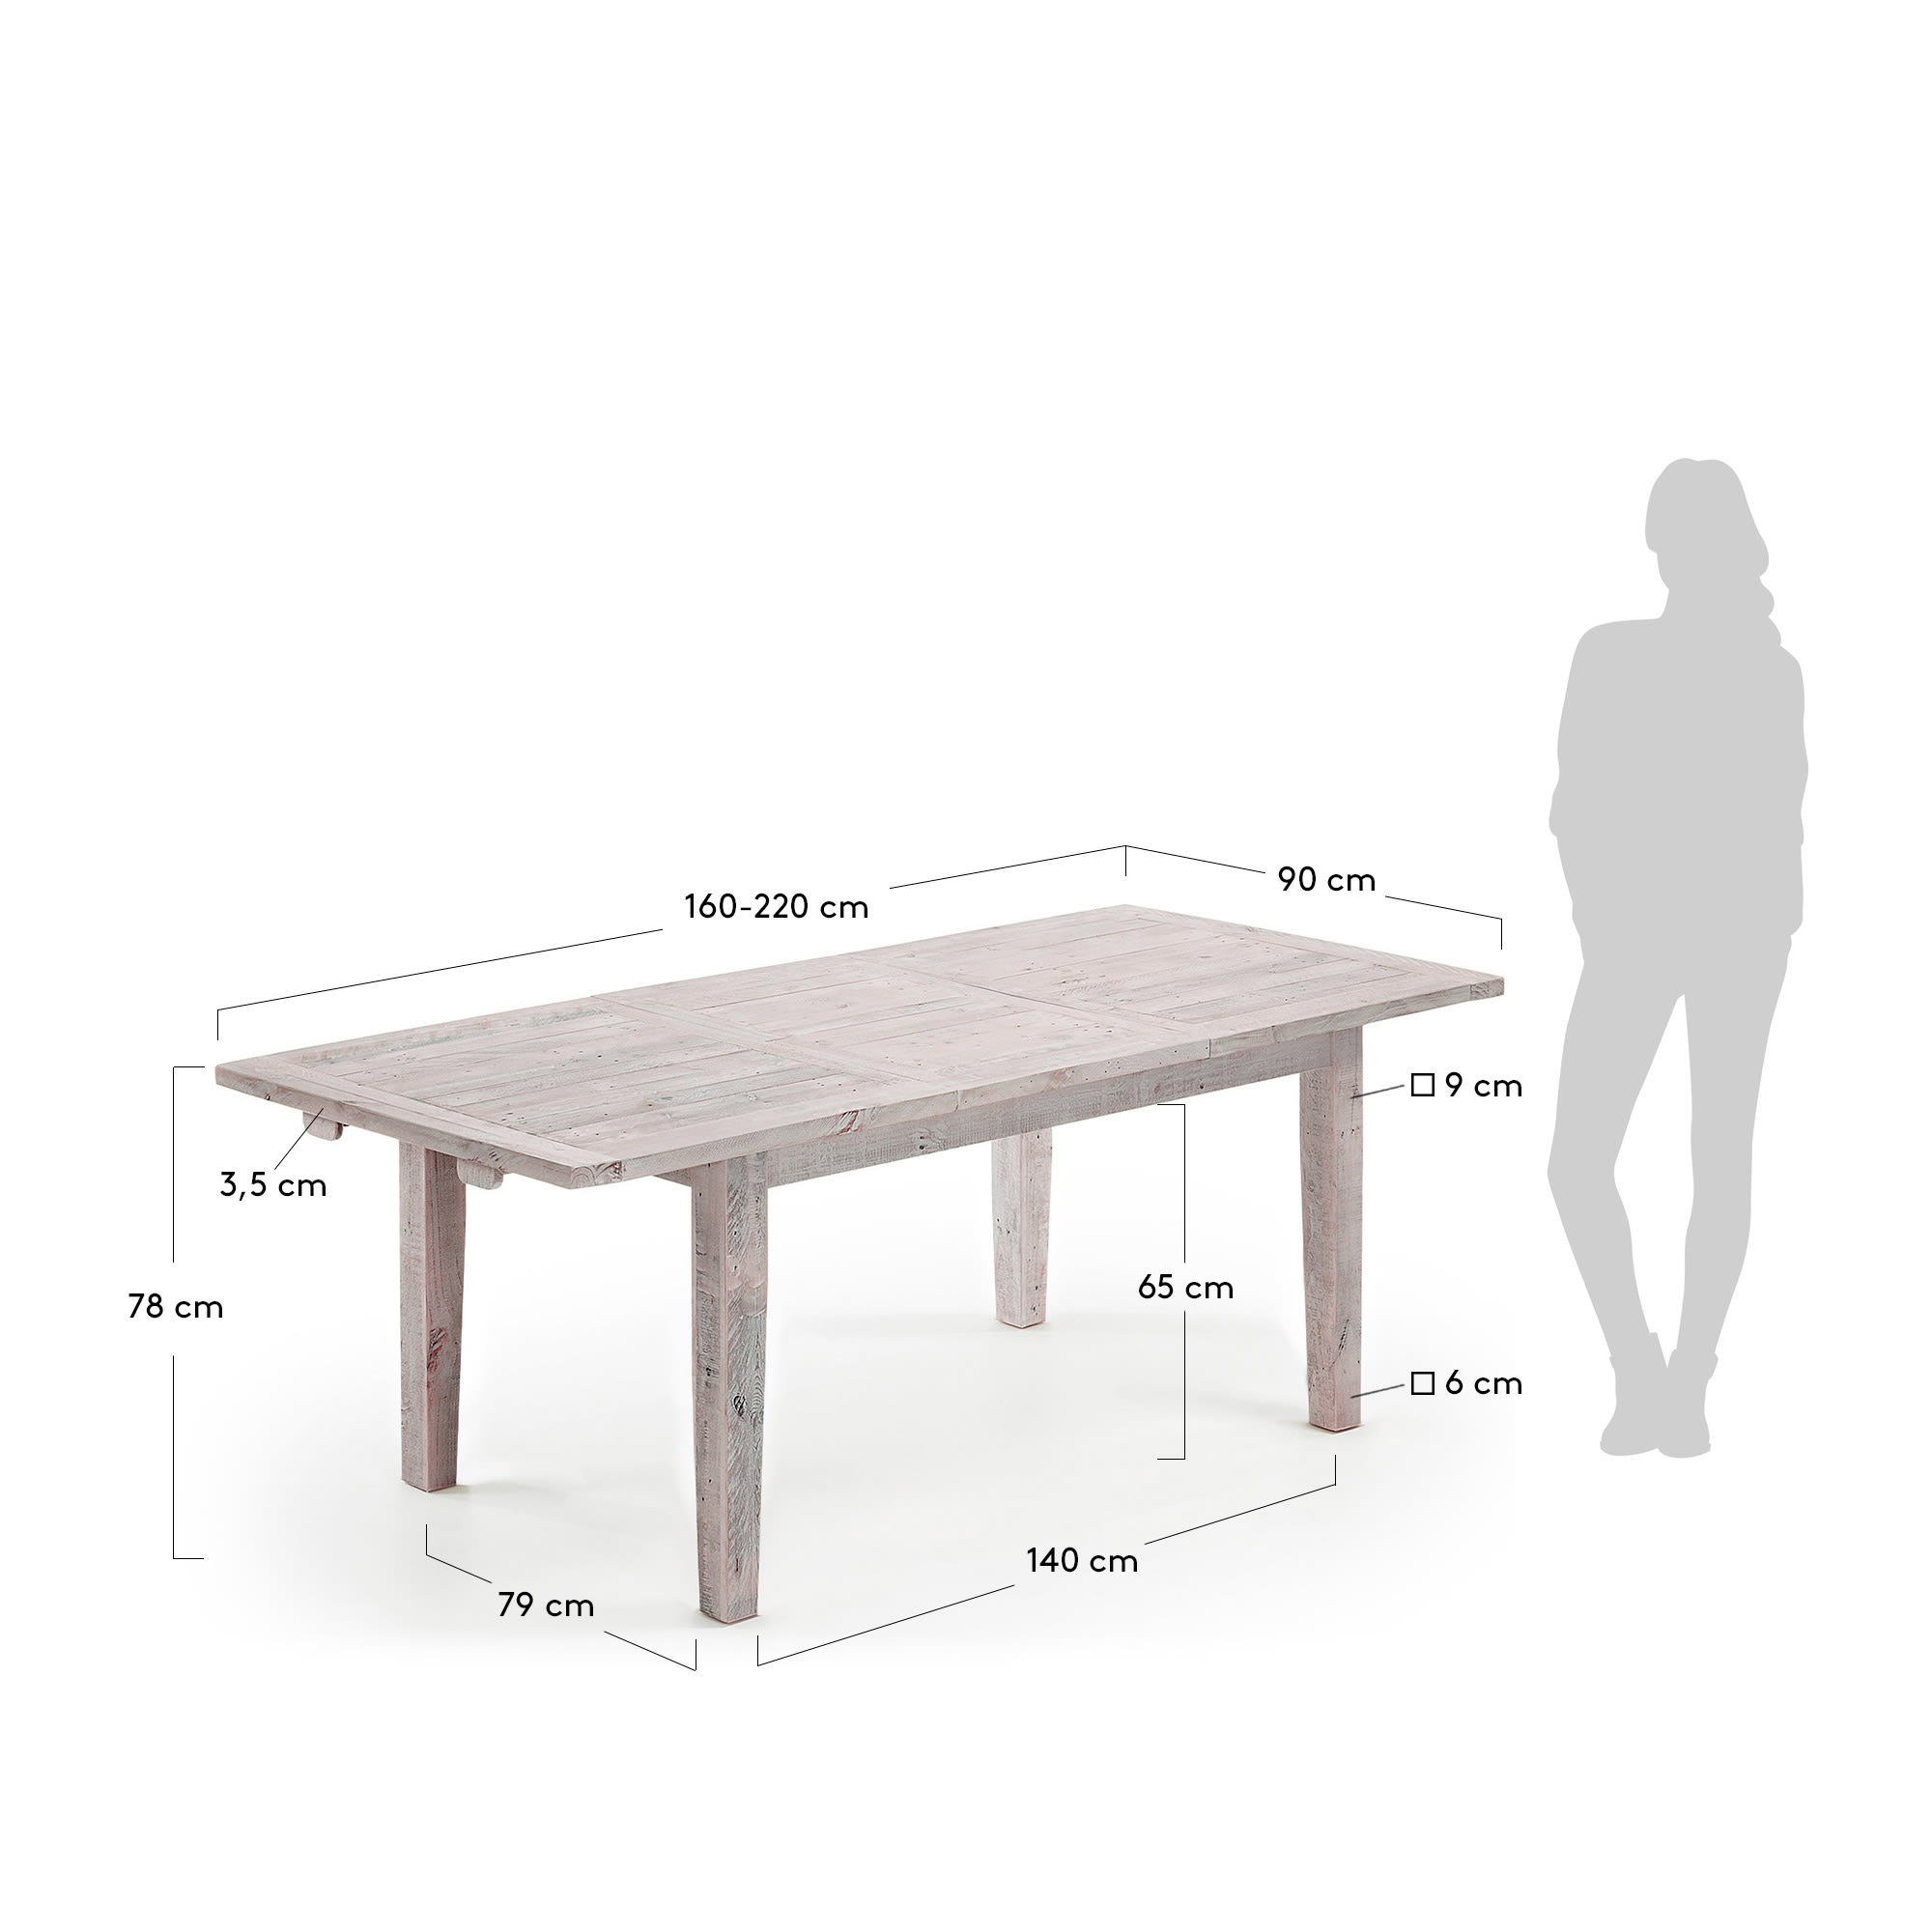 워즈 확장형 화이트 목재 확장 테이블 160(220) x 90cm - 크기